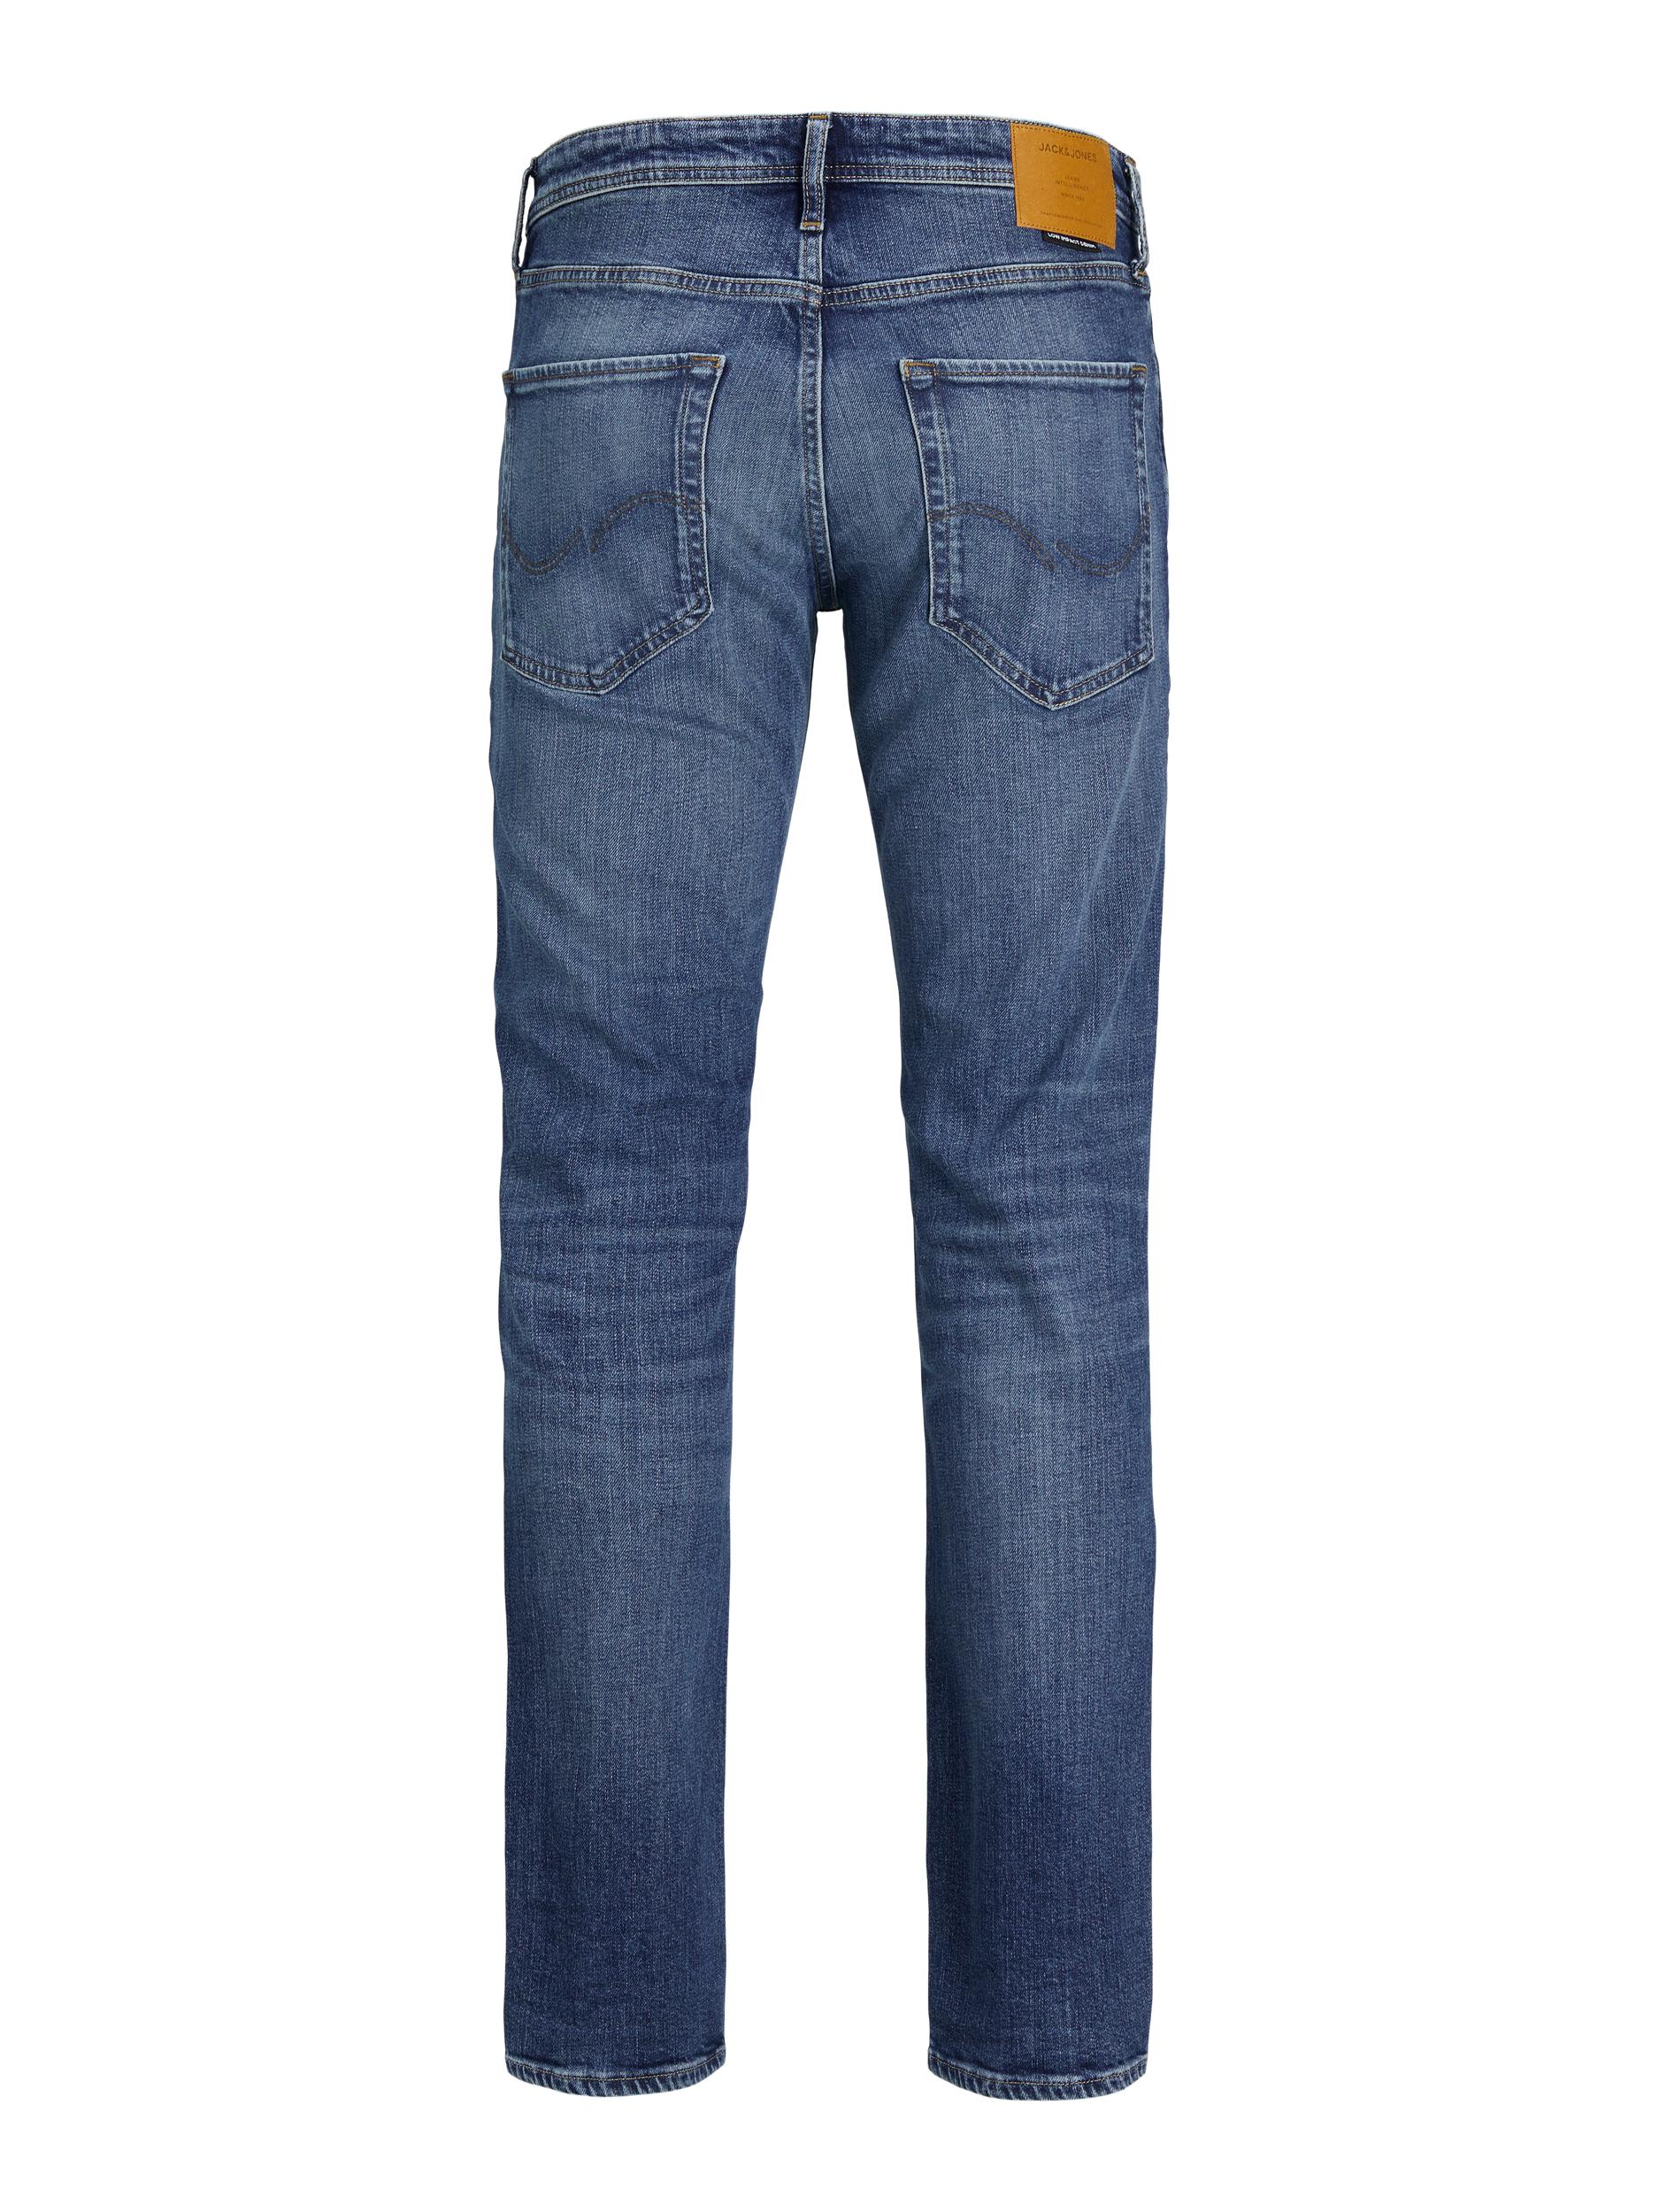  Clark Jeans, Blue Denim, W28/L32